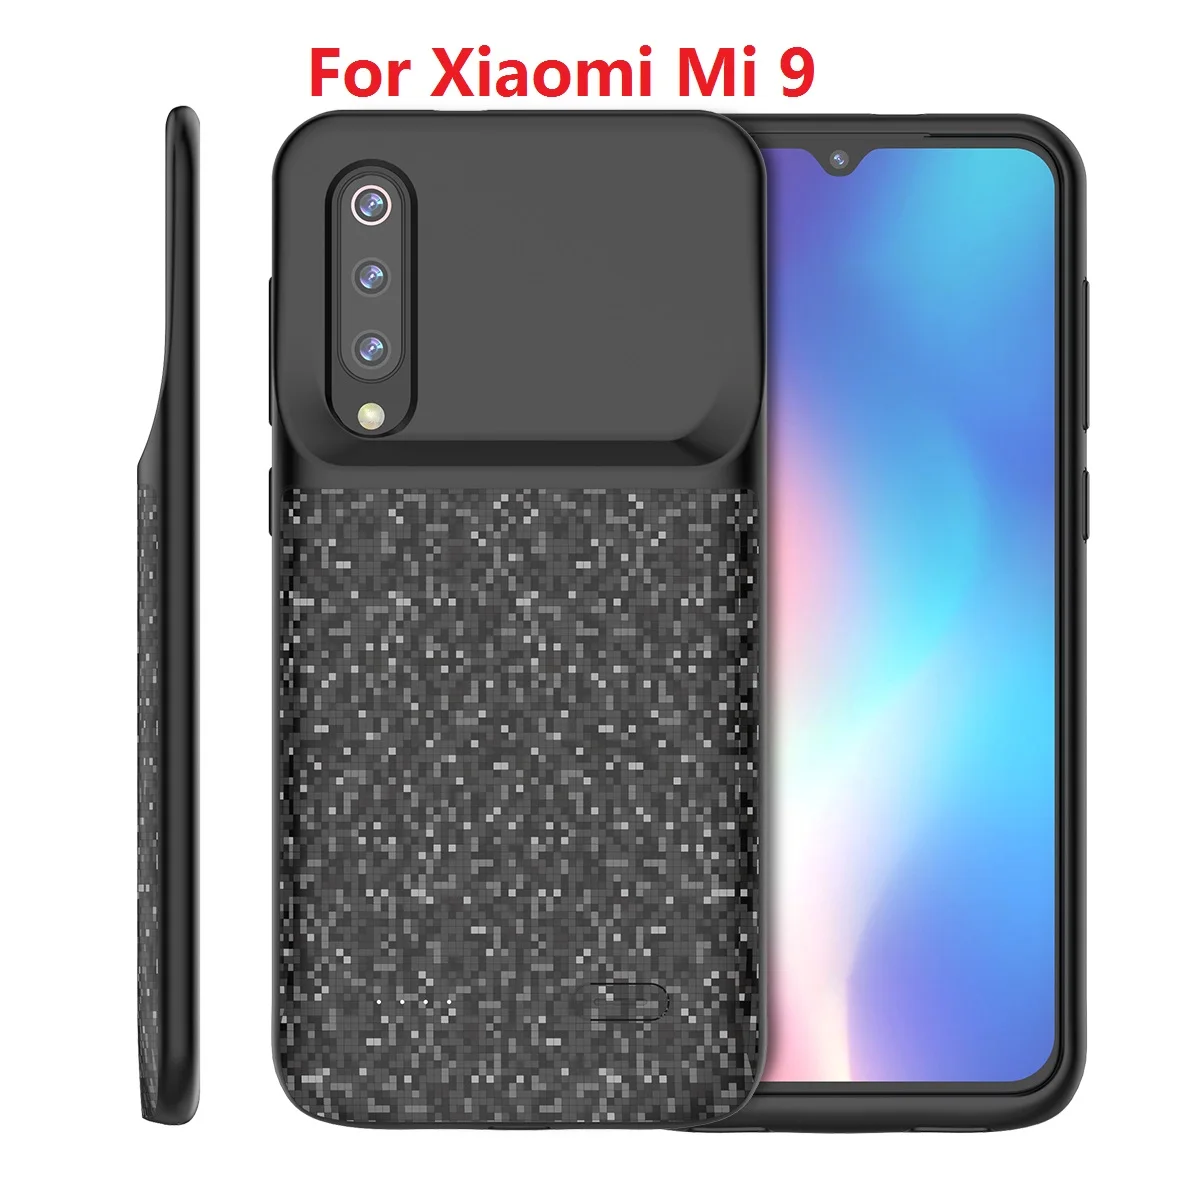 Для Xiaomi mi 9 mi 9 SE аккумулятор зарядное устройство чехол 4700 мАч Внешний тонкий PowerBank перезаряжаемая задняя крышка для Xiaomi mi 9 батарея Чехол - Цвет: MI 9 Black